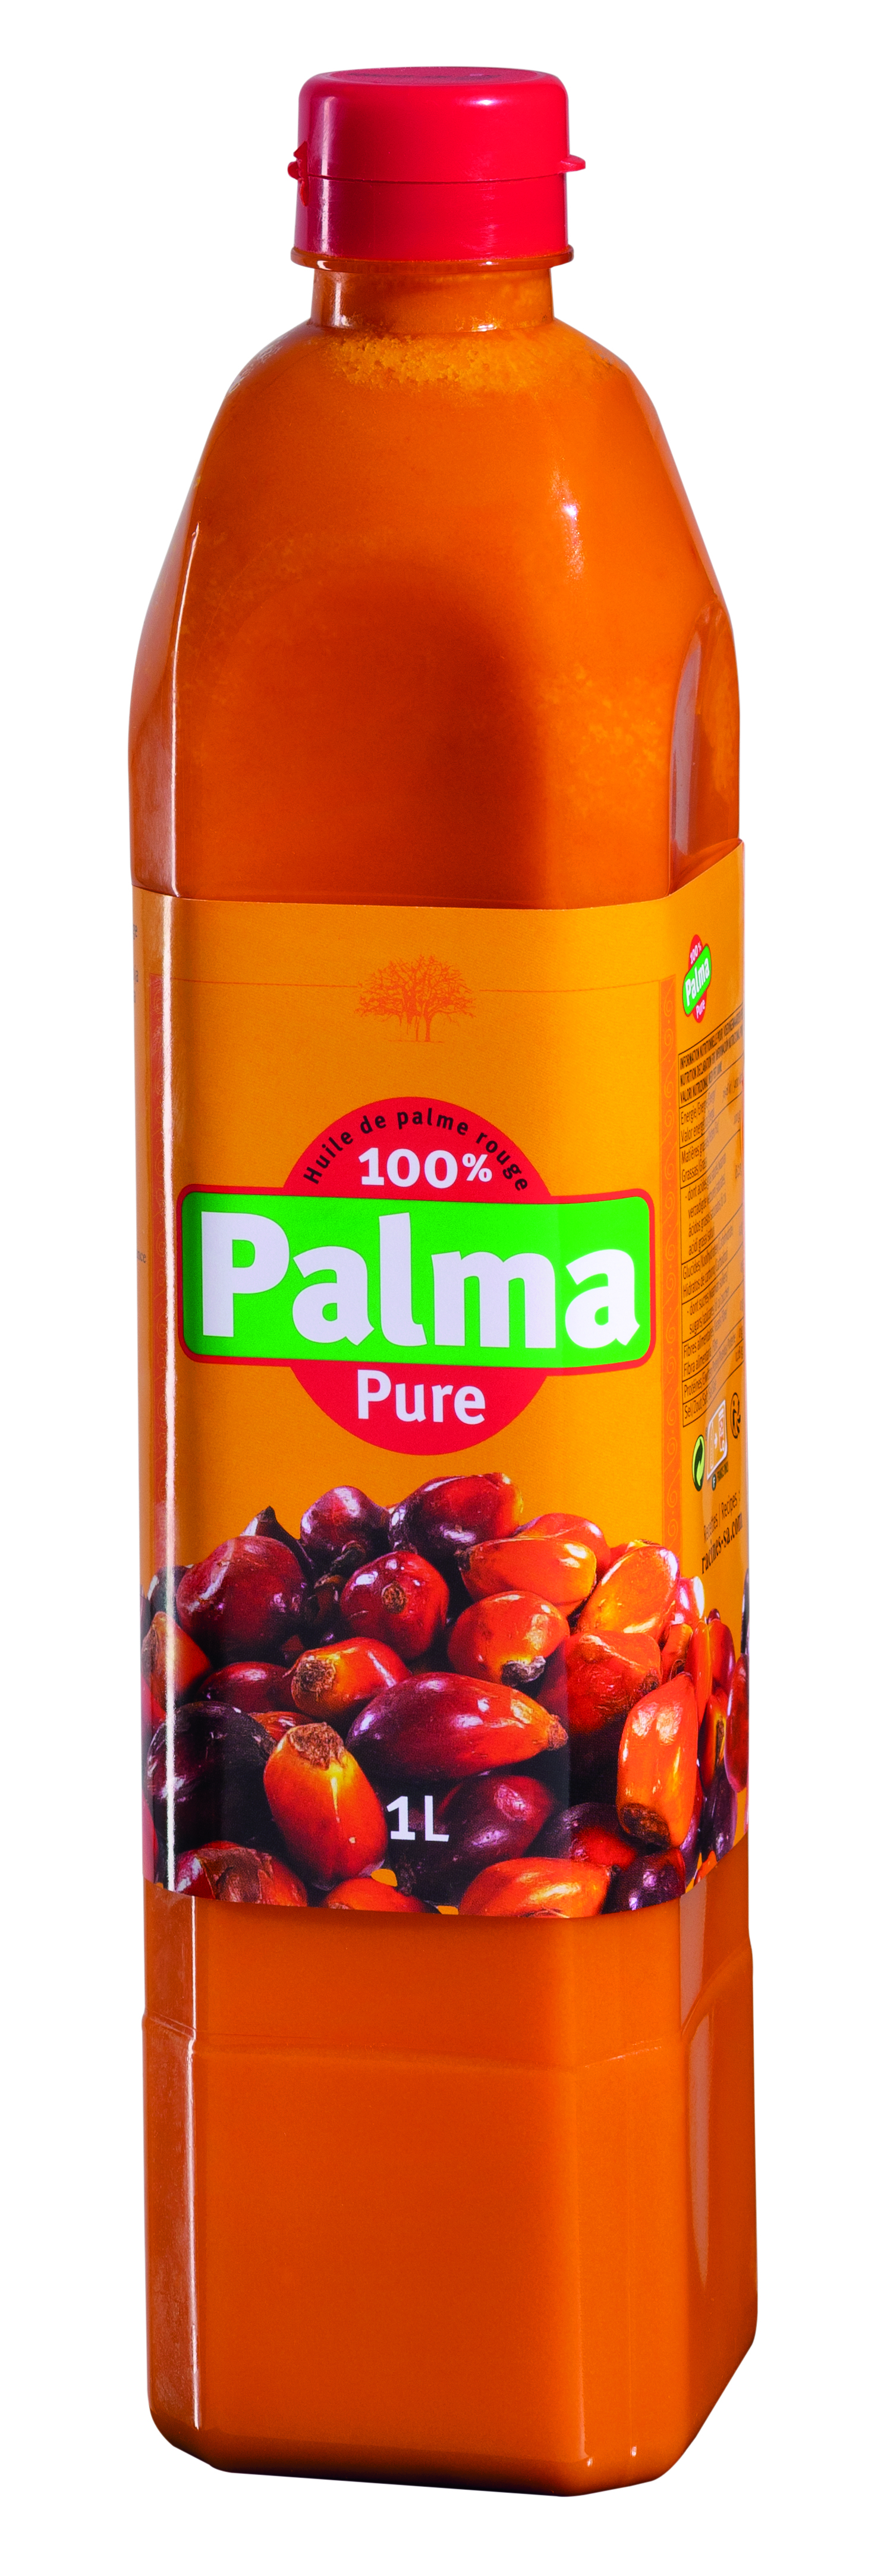 Palma Red Palm Oil 12 X 100 Cl - PALMA